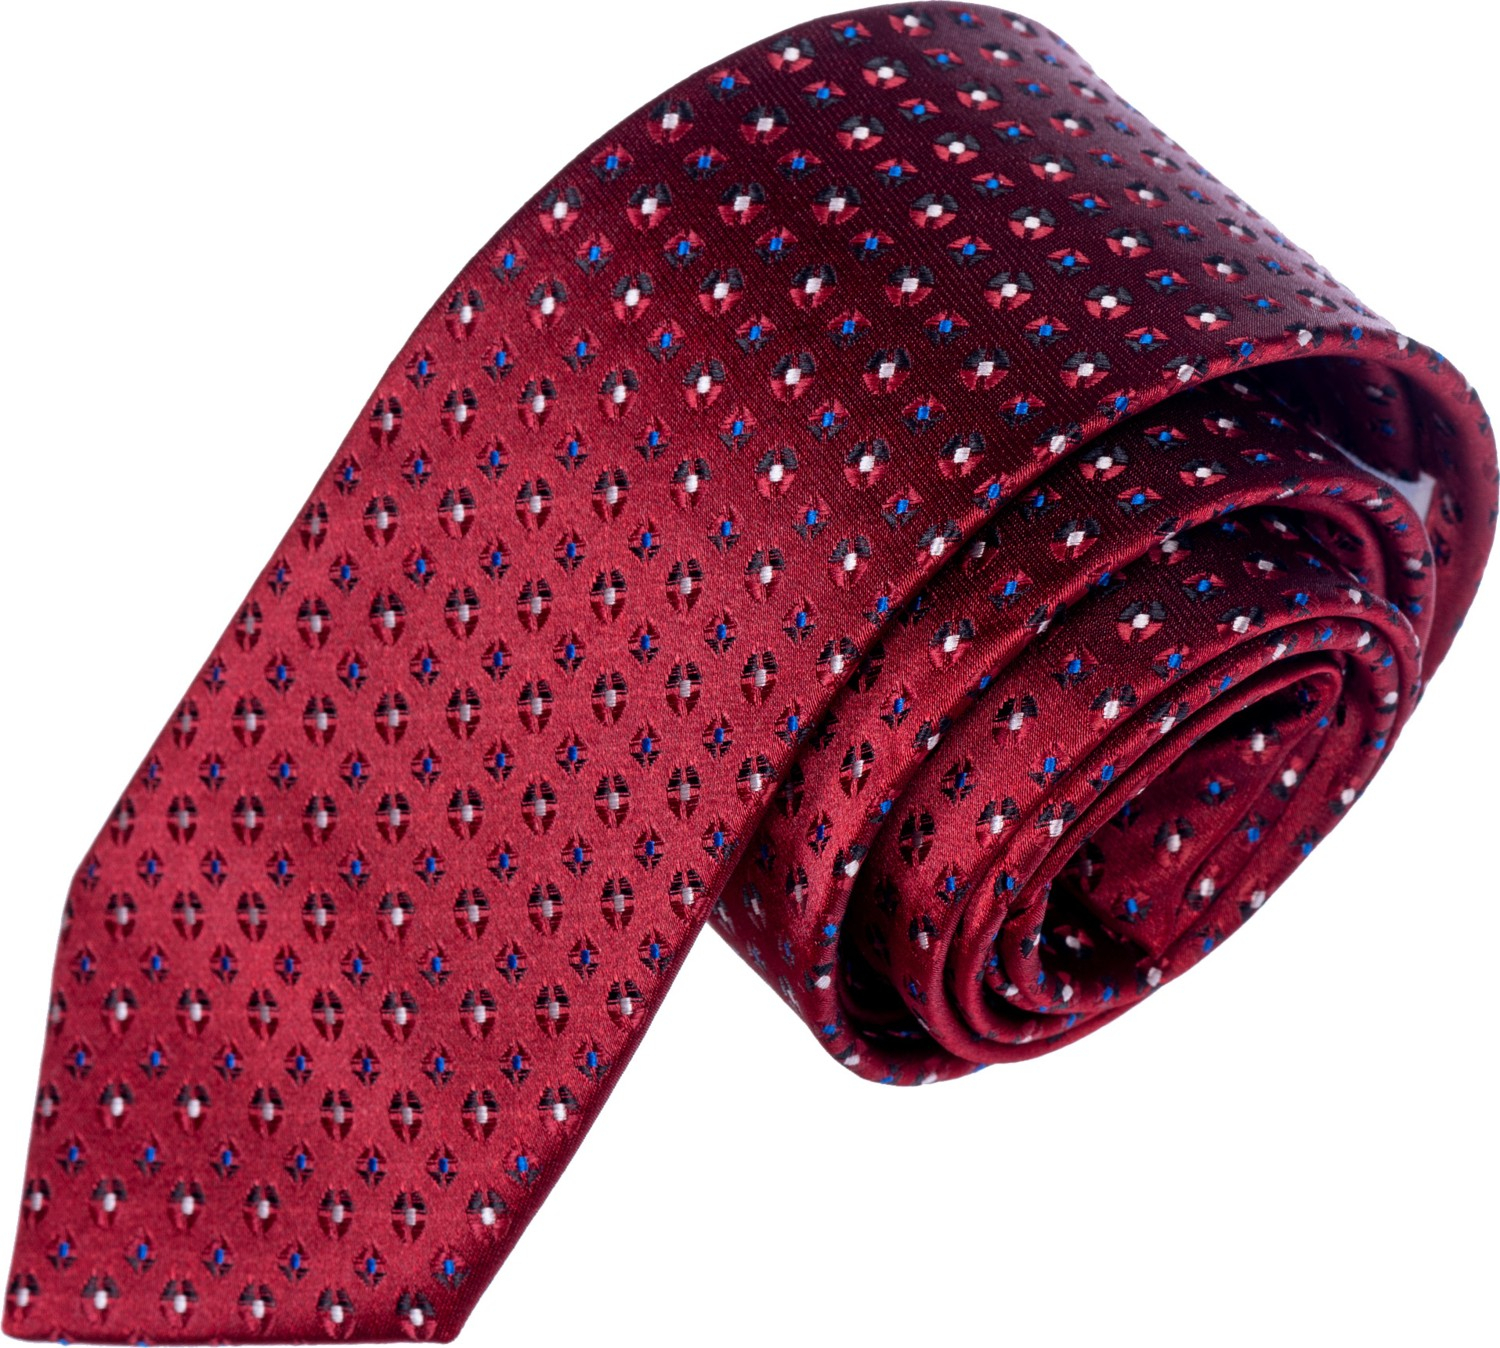 Эксклюзивный галстук Exve бордового цвета с геометрическим узором, выполненный в технике жаккардового плетения.